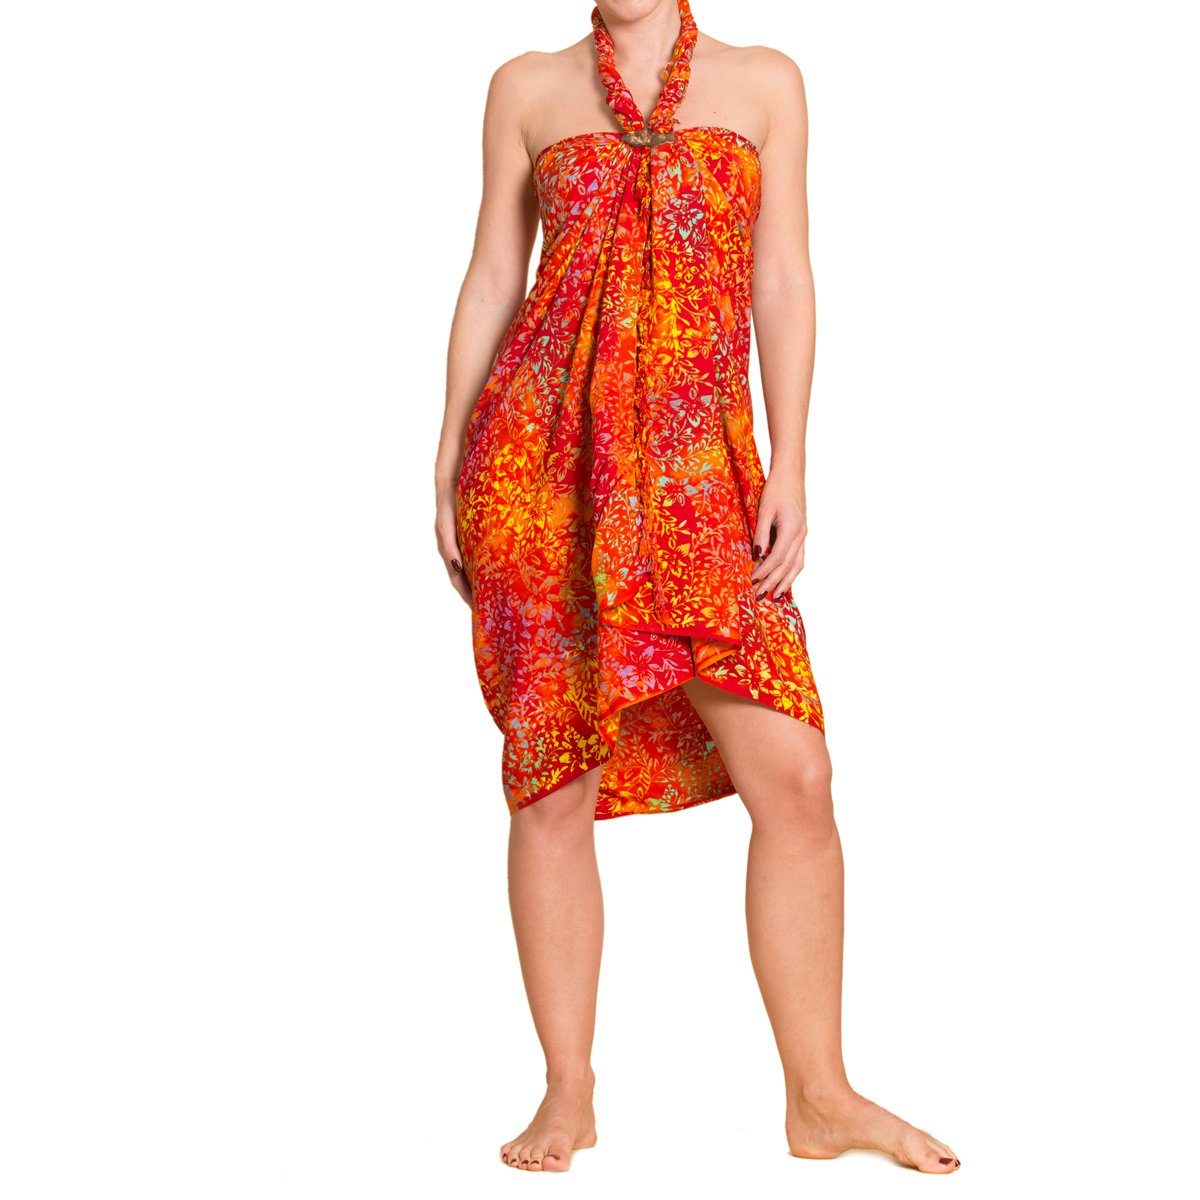 PANASIAM Pareo Sarong Wachsbatik auch für Überwurf als Tuch großen tragbar Größen Cover-up Wrap Bikini Strandtuch oder, orange B001 den Strandkleid Strand in